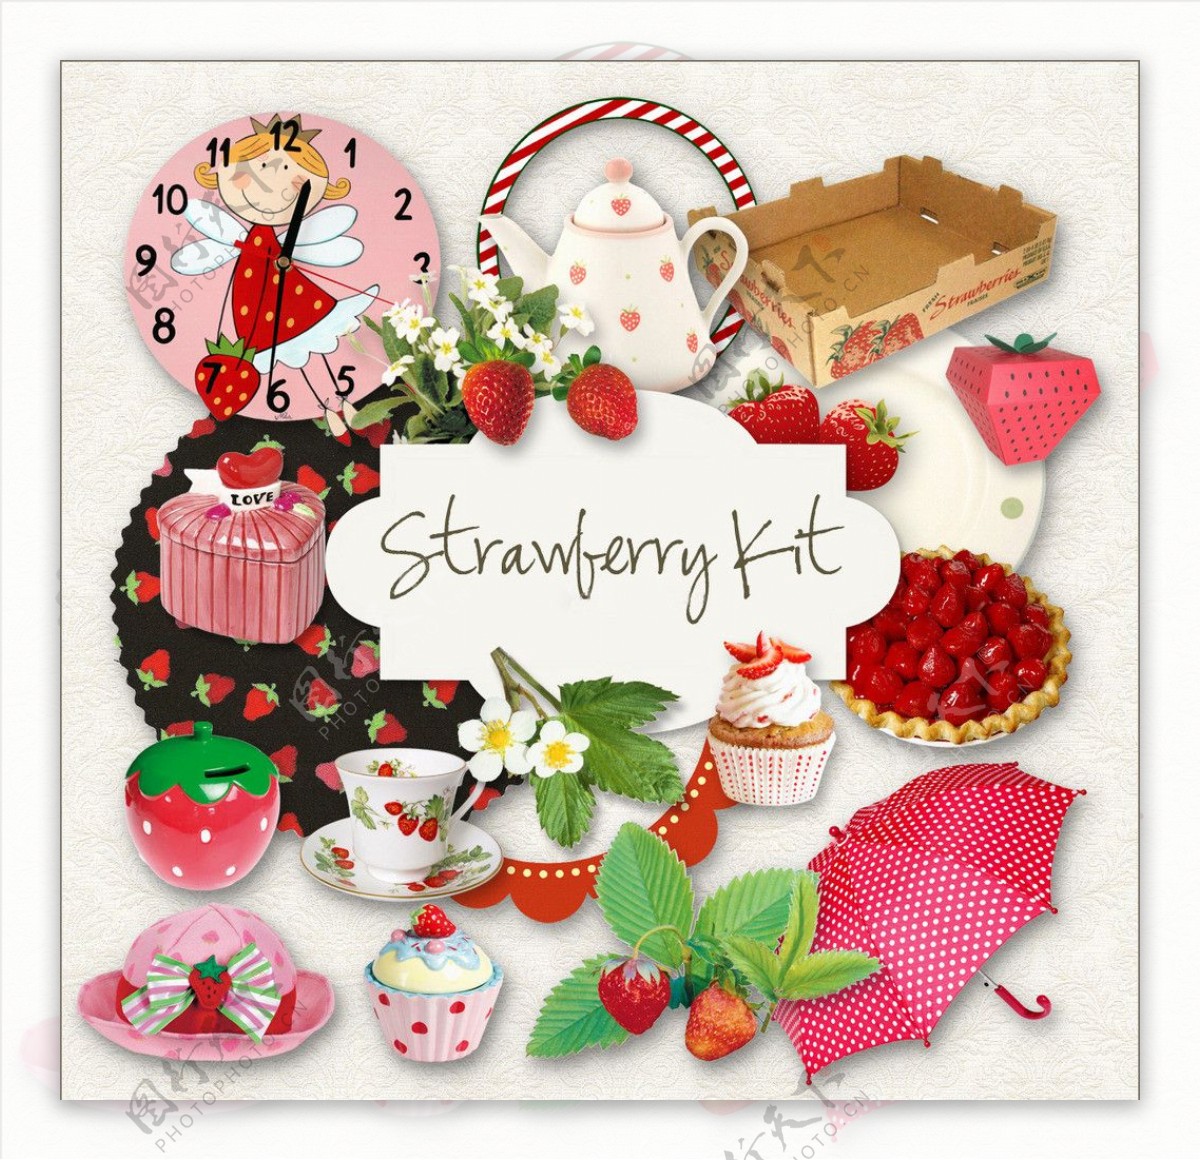 草莓茶杯生活用品图片